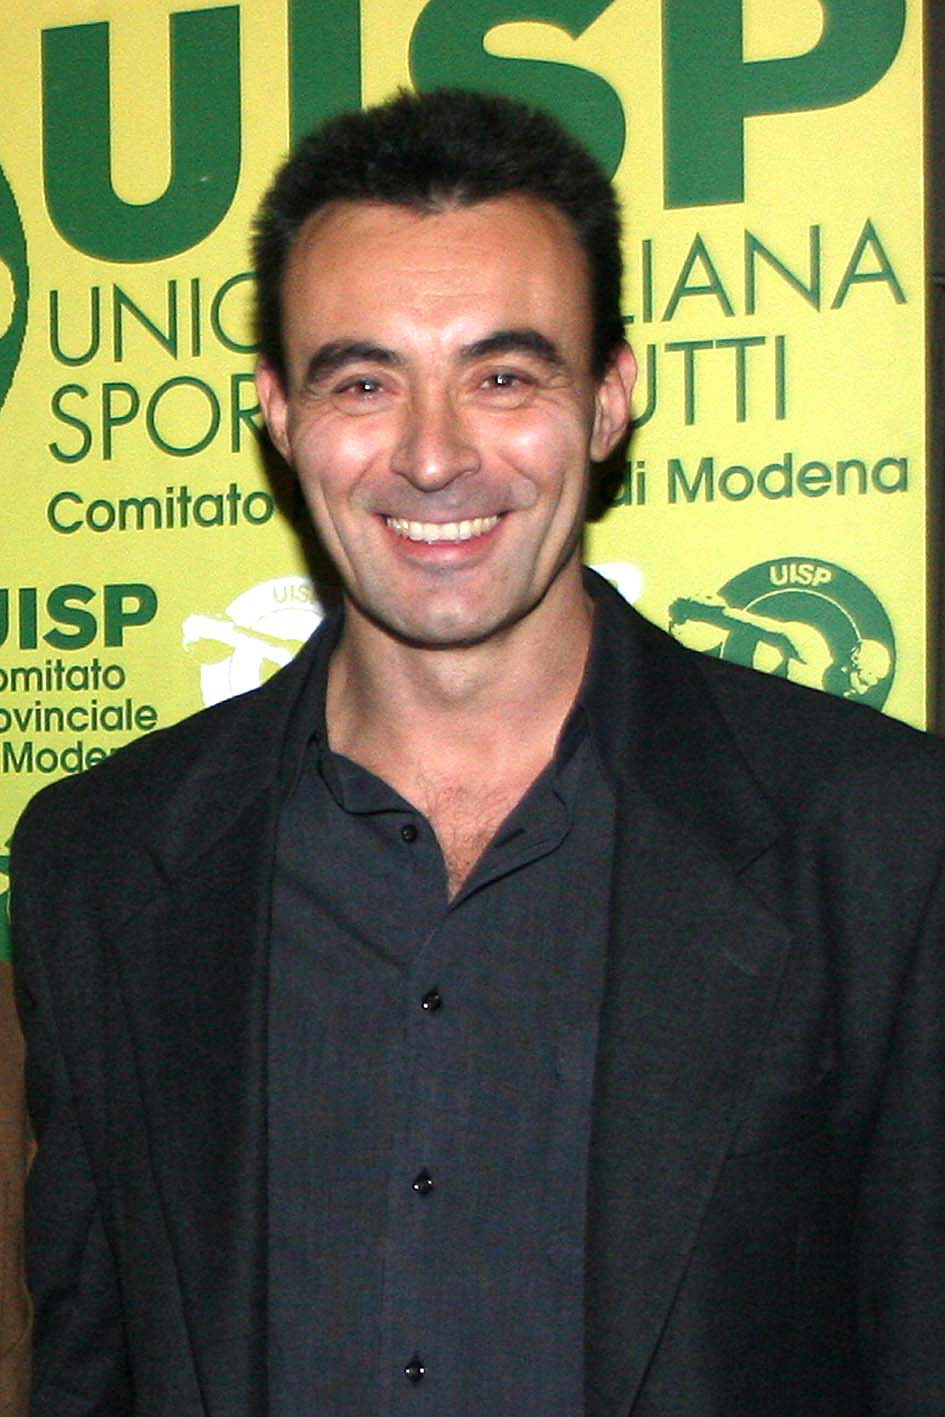 Andrea Covi (Presidente Uisp Comitato Territoriale Modena)